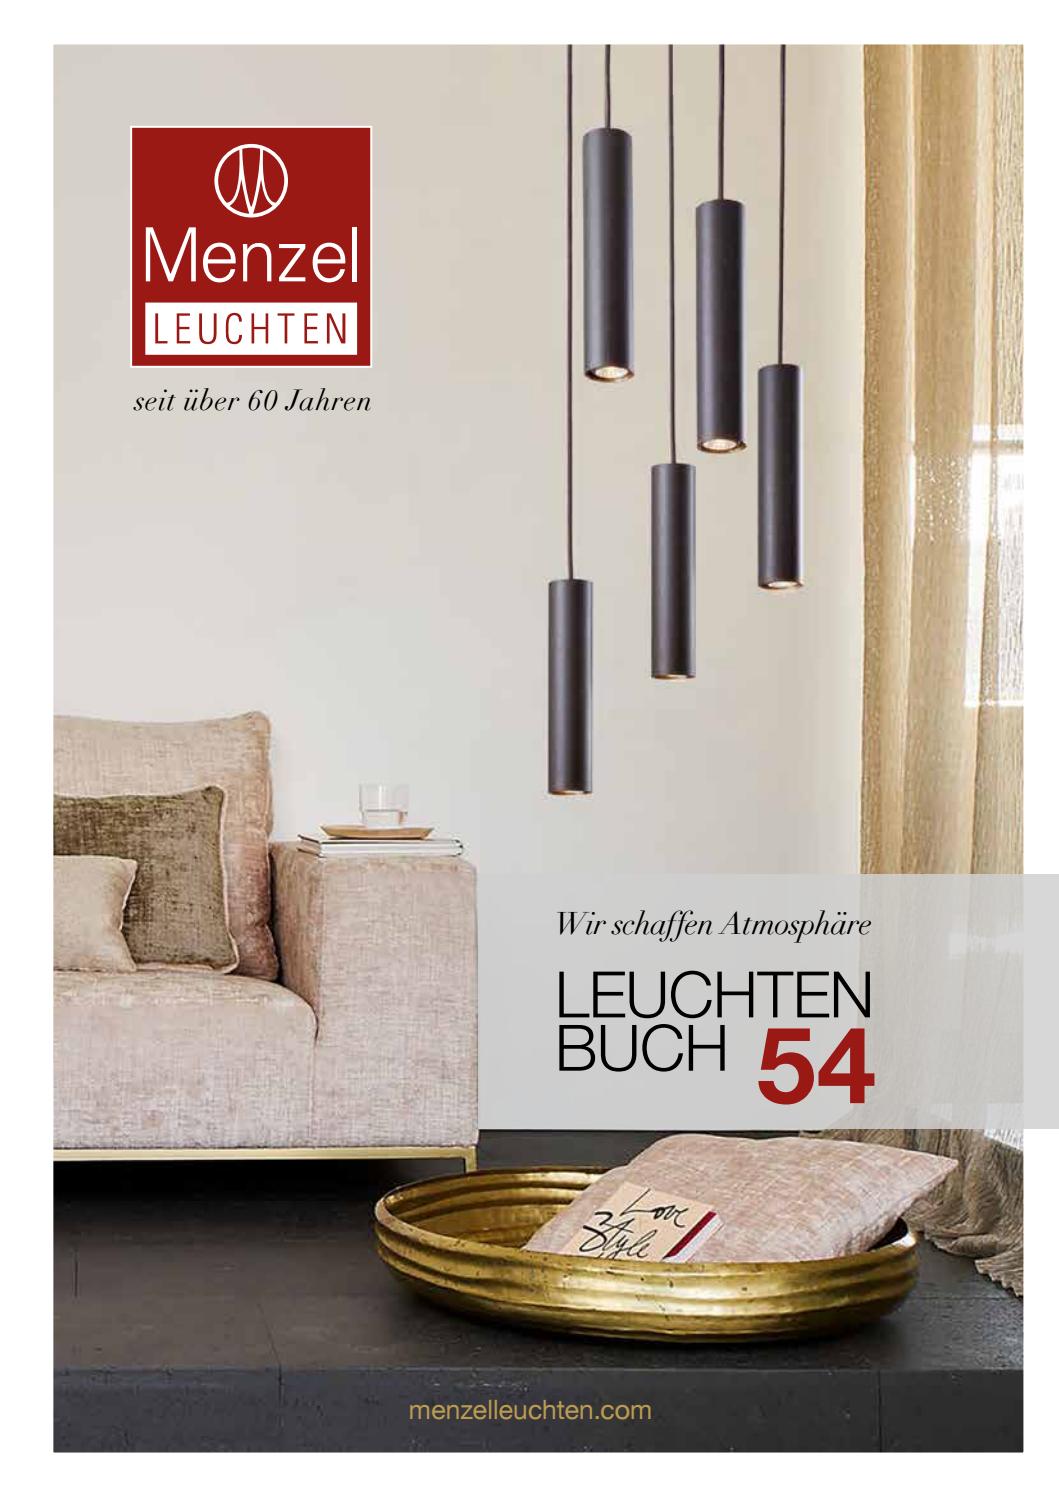 Edelrost Herstellen Einzigartig Leuchtenbuch Menzel Leuchten Katalog54 by Menzel